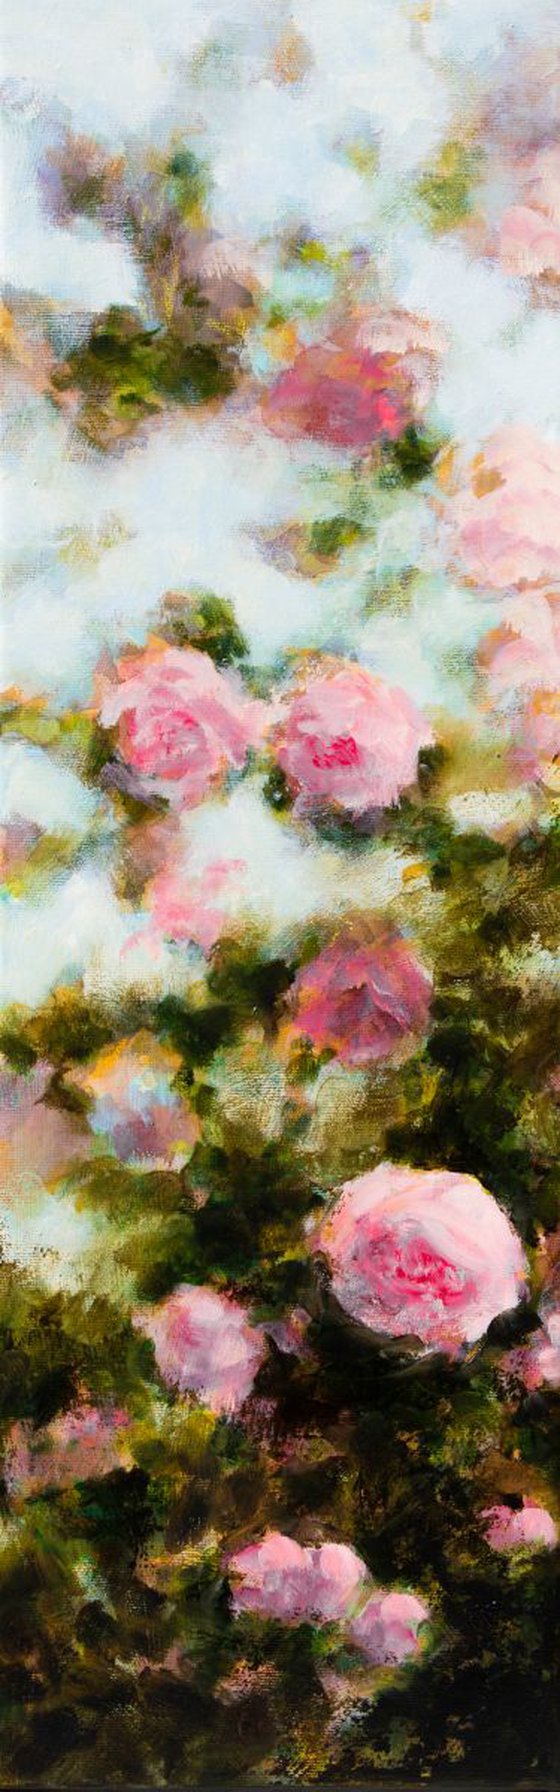 Buisson de roses roses - Pink Rosebush